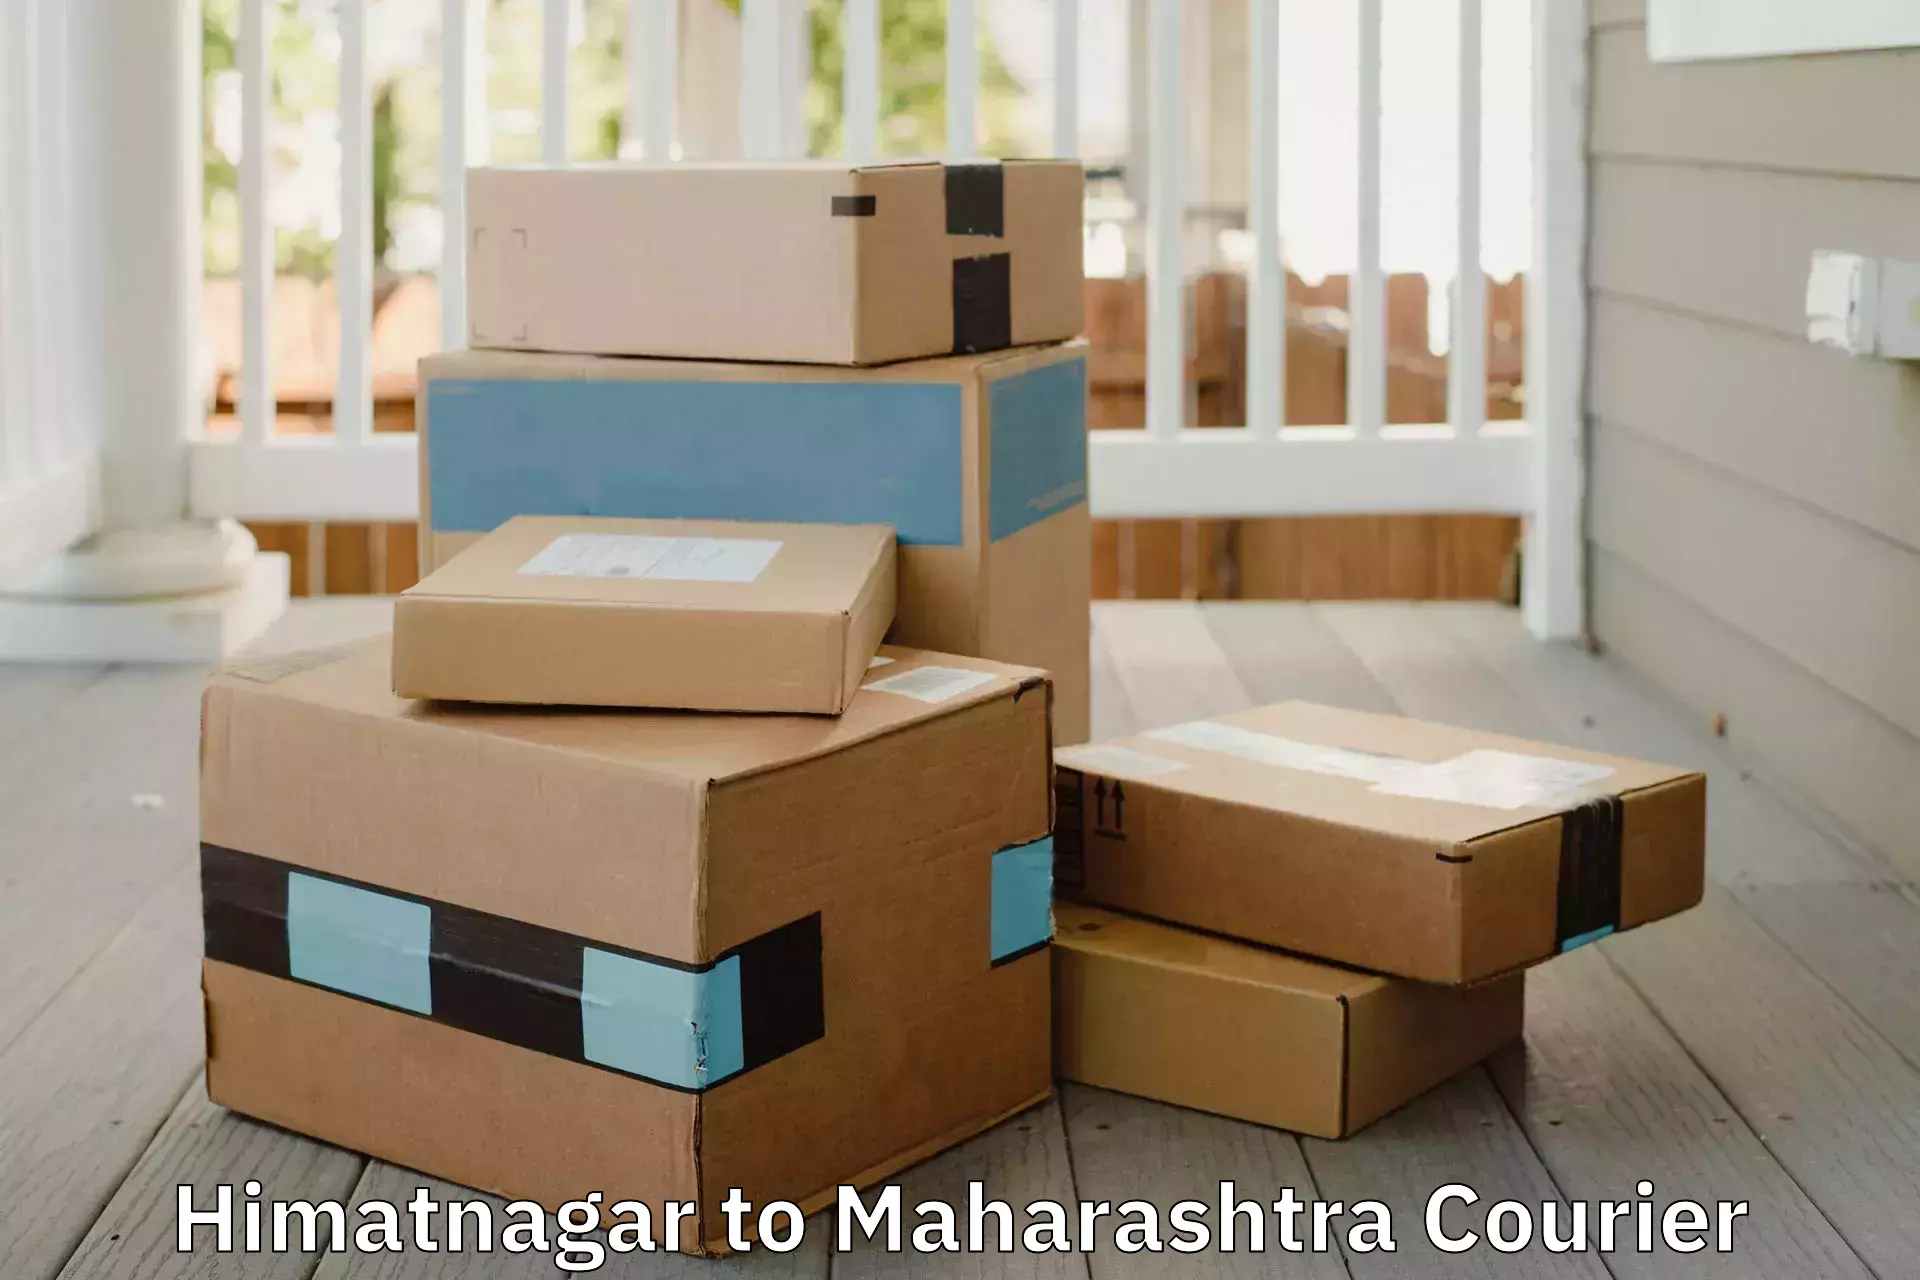 Efficient moving and packing in Himatnagar to Maharashtra